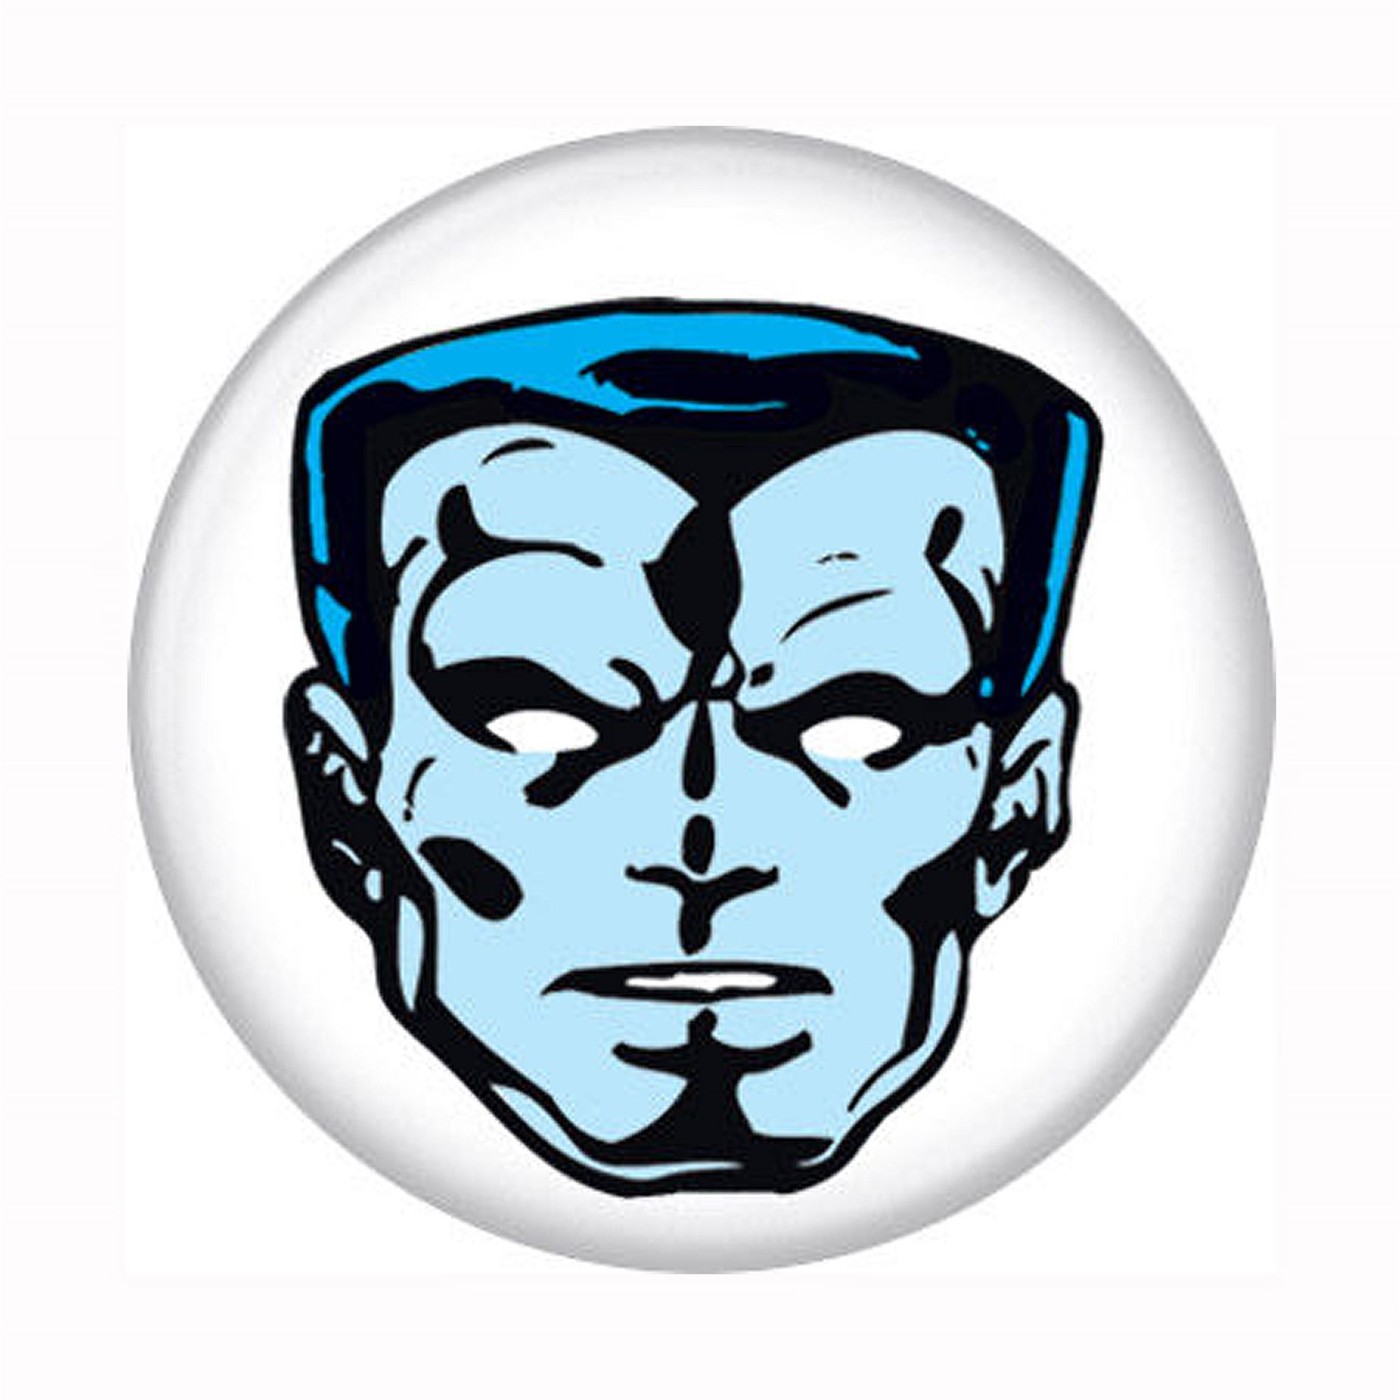 X-Men Colossus Head Button